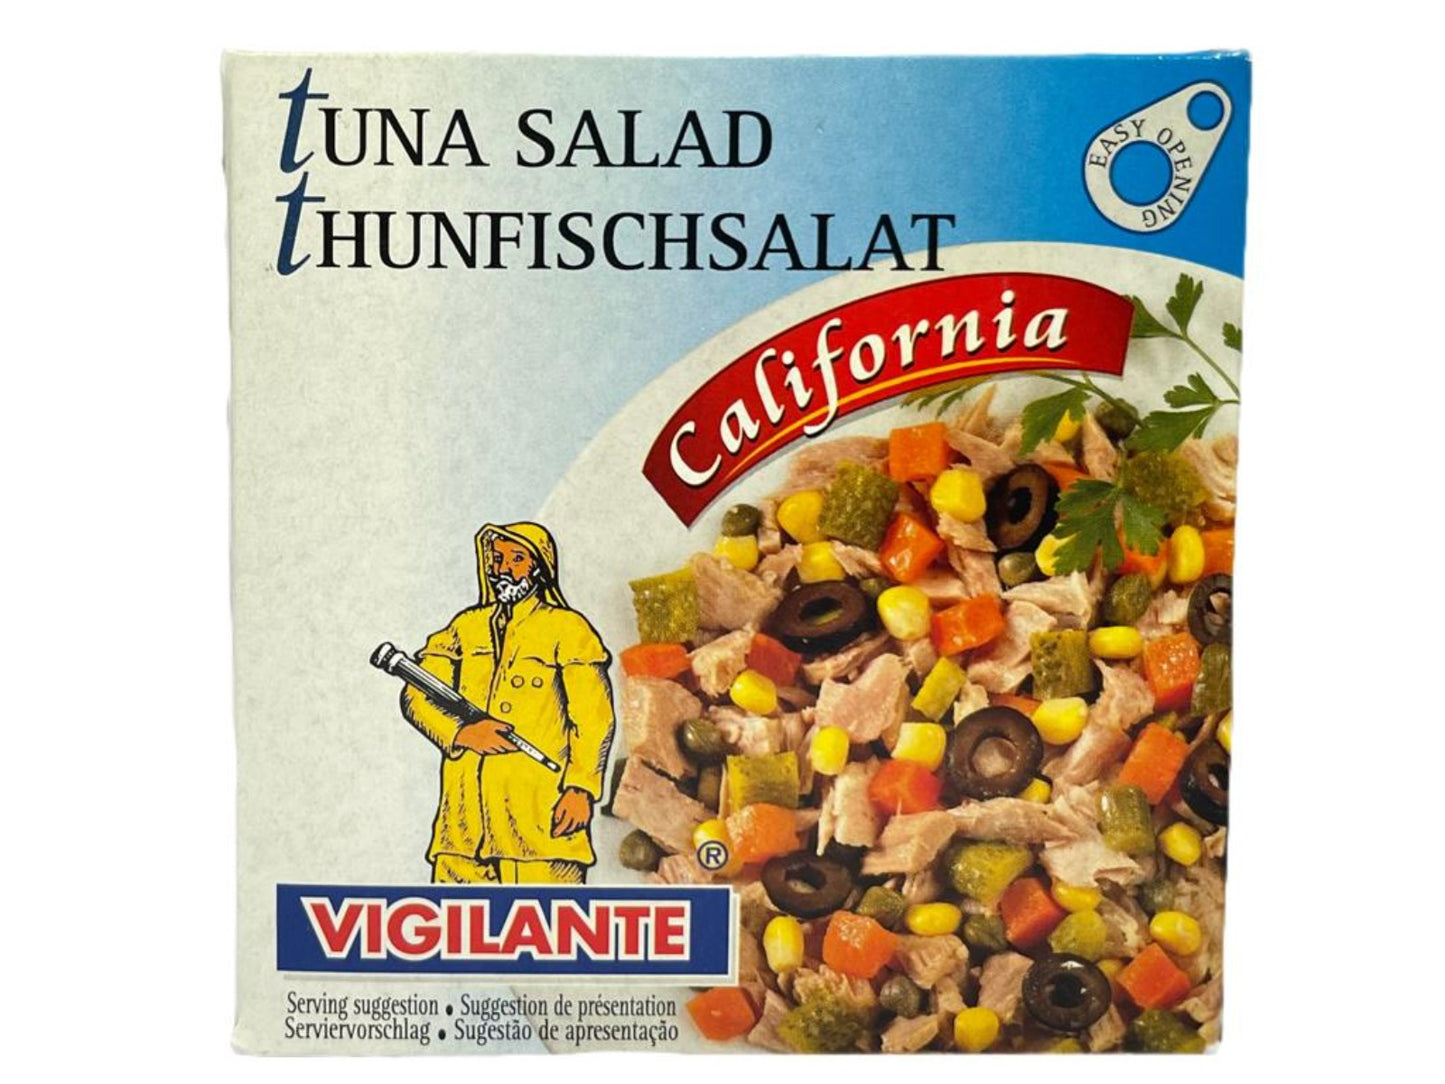 Vigilante Ensalada de Atun California - Tuna Salad California 150g